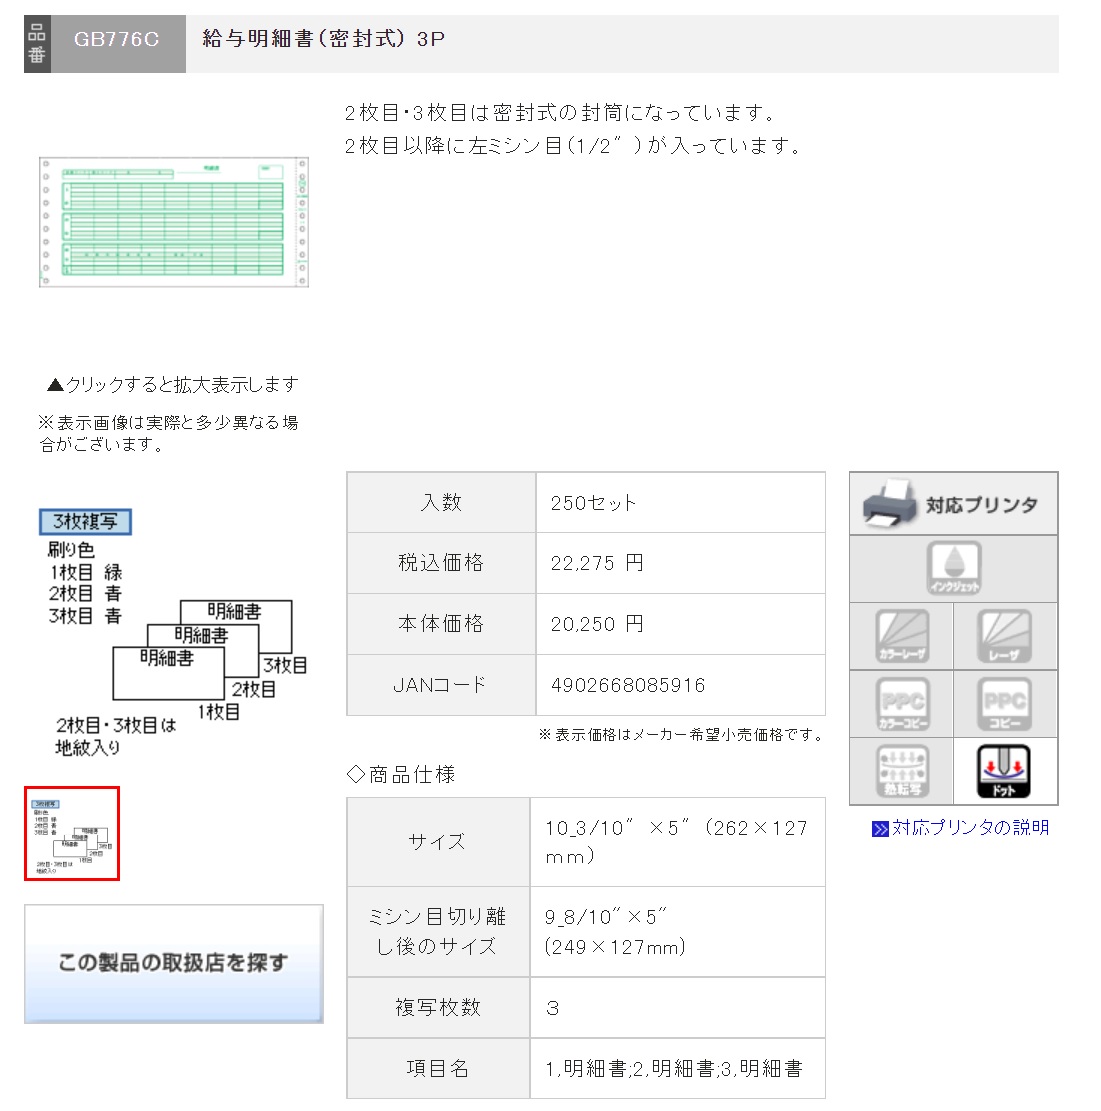 ヒサゴ コンピュータ用帳票 ドットプリンタ用 SB480 1000セット - 3